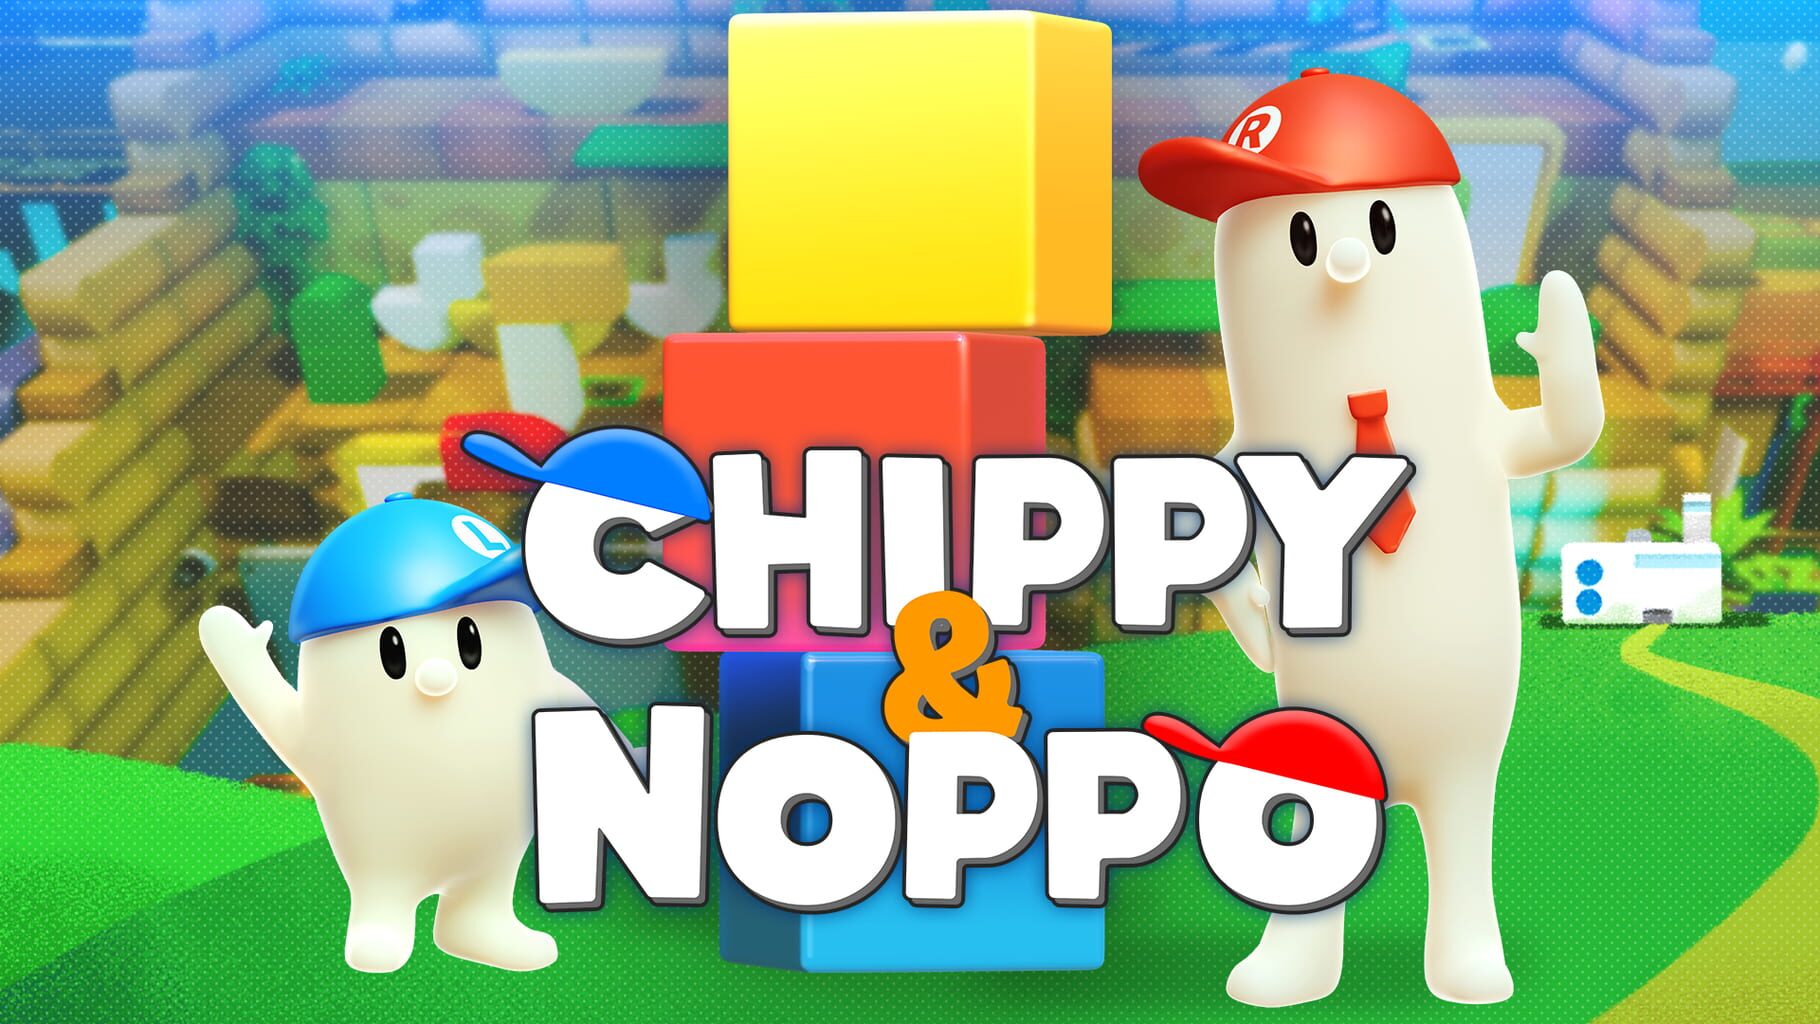 Chippy & Noppo artwork